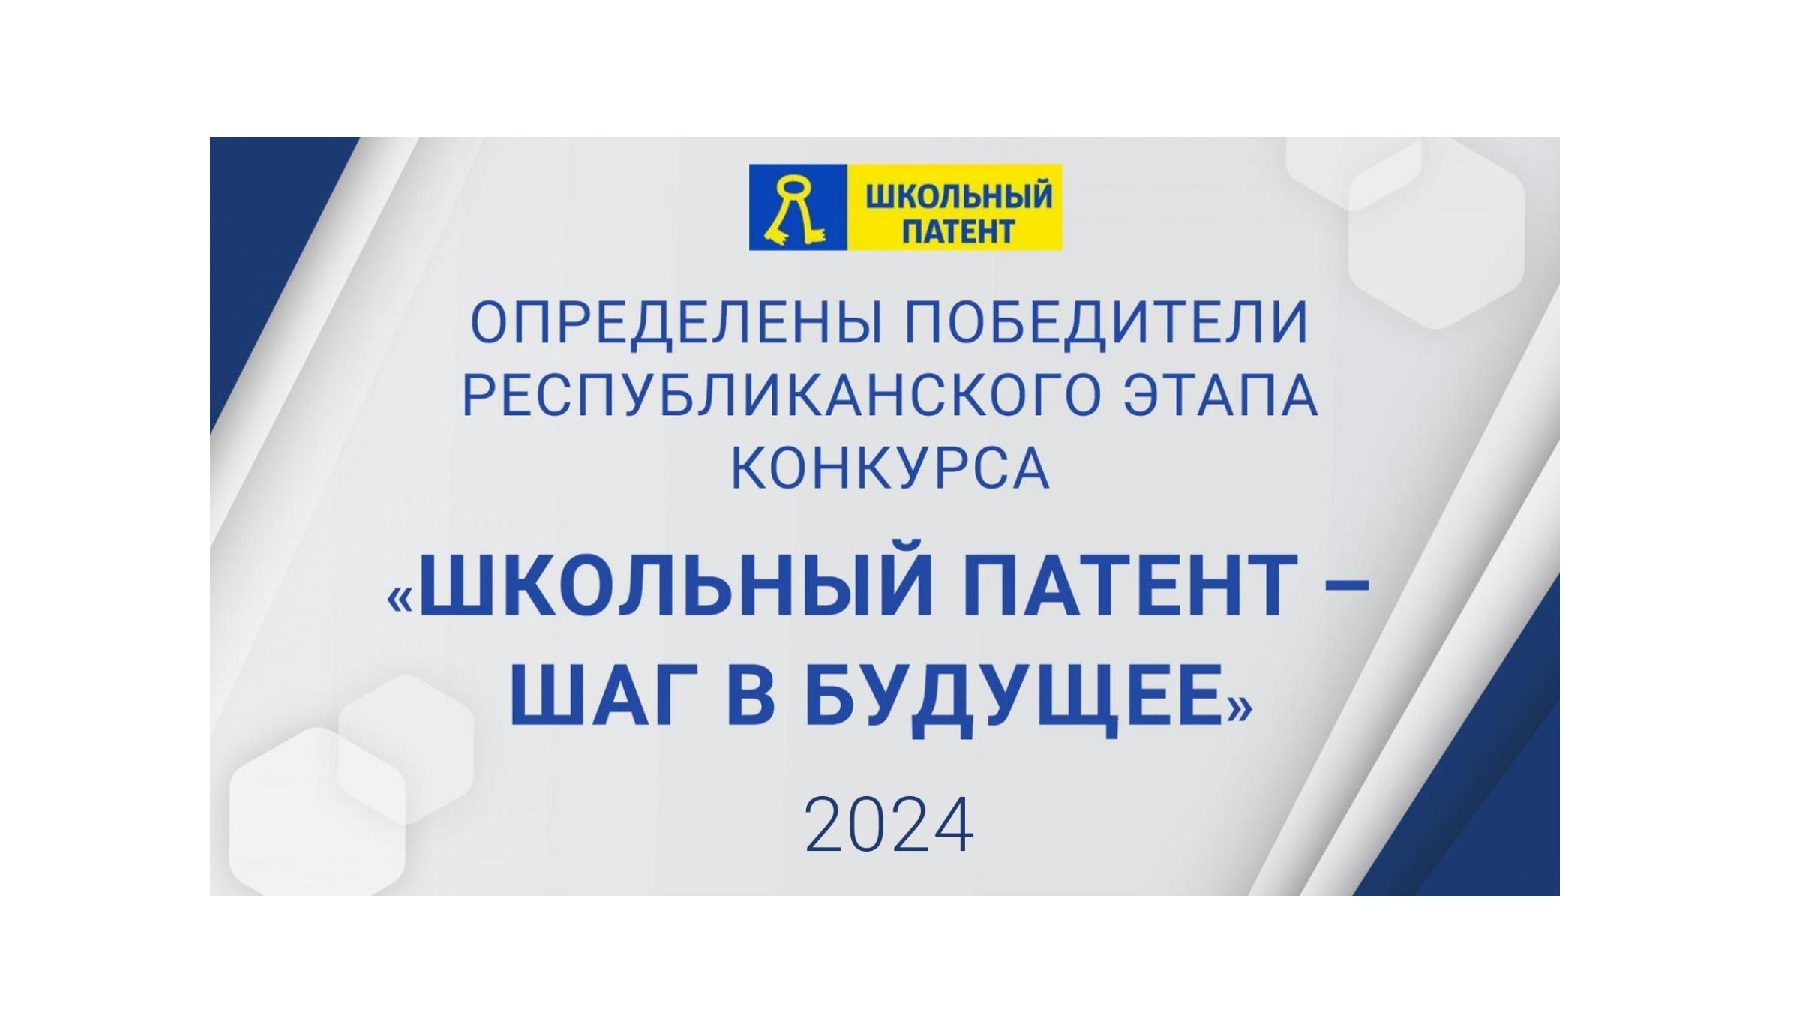 Определены победители республиканского этапа конкурса «Школьный патент – шаг в будущее!» - 2024.